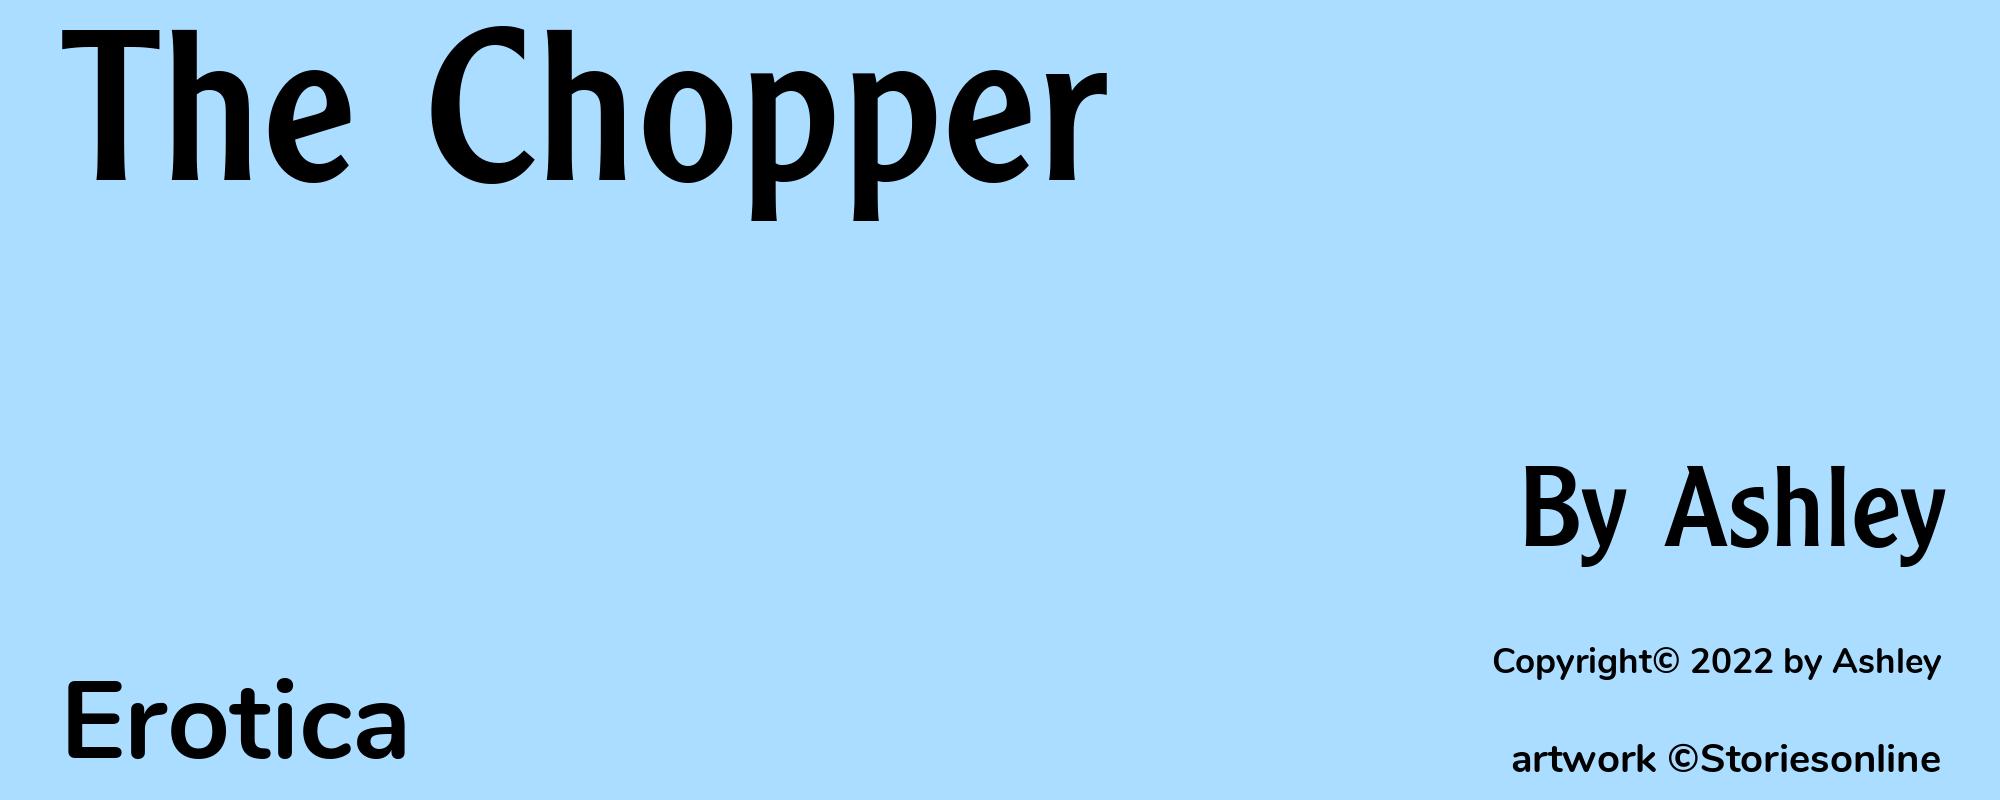 The Chopper - Cover